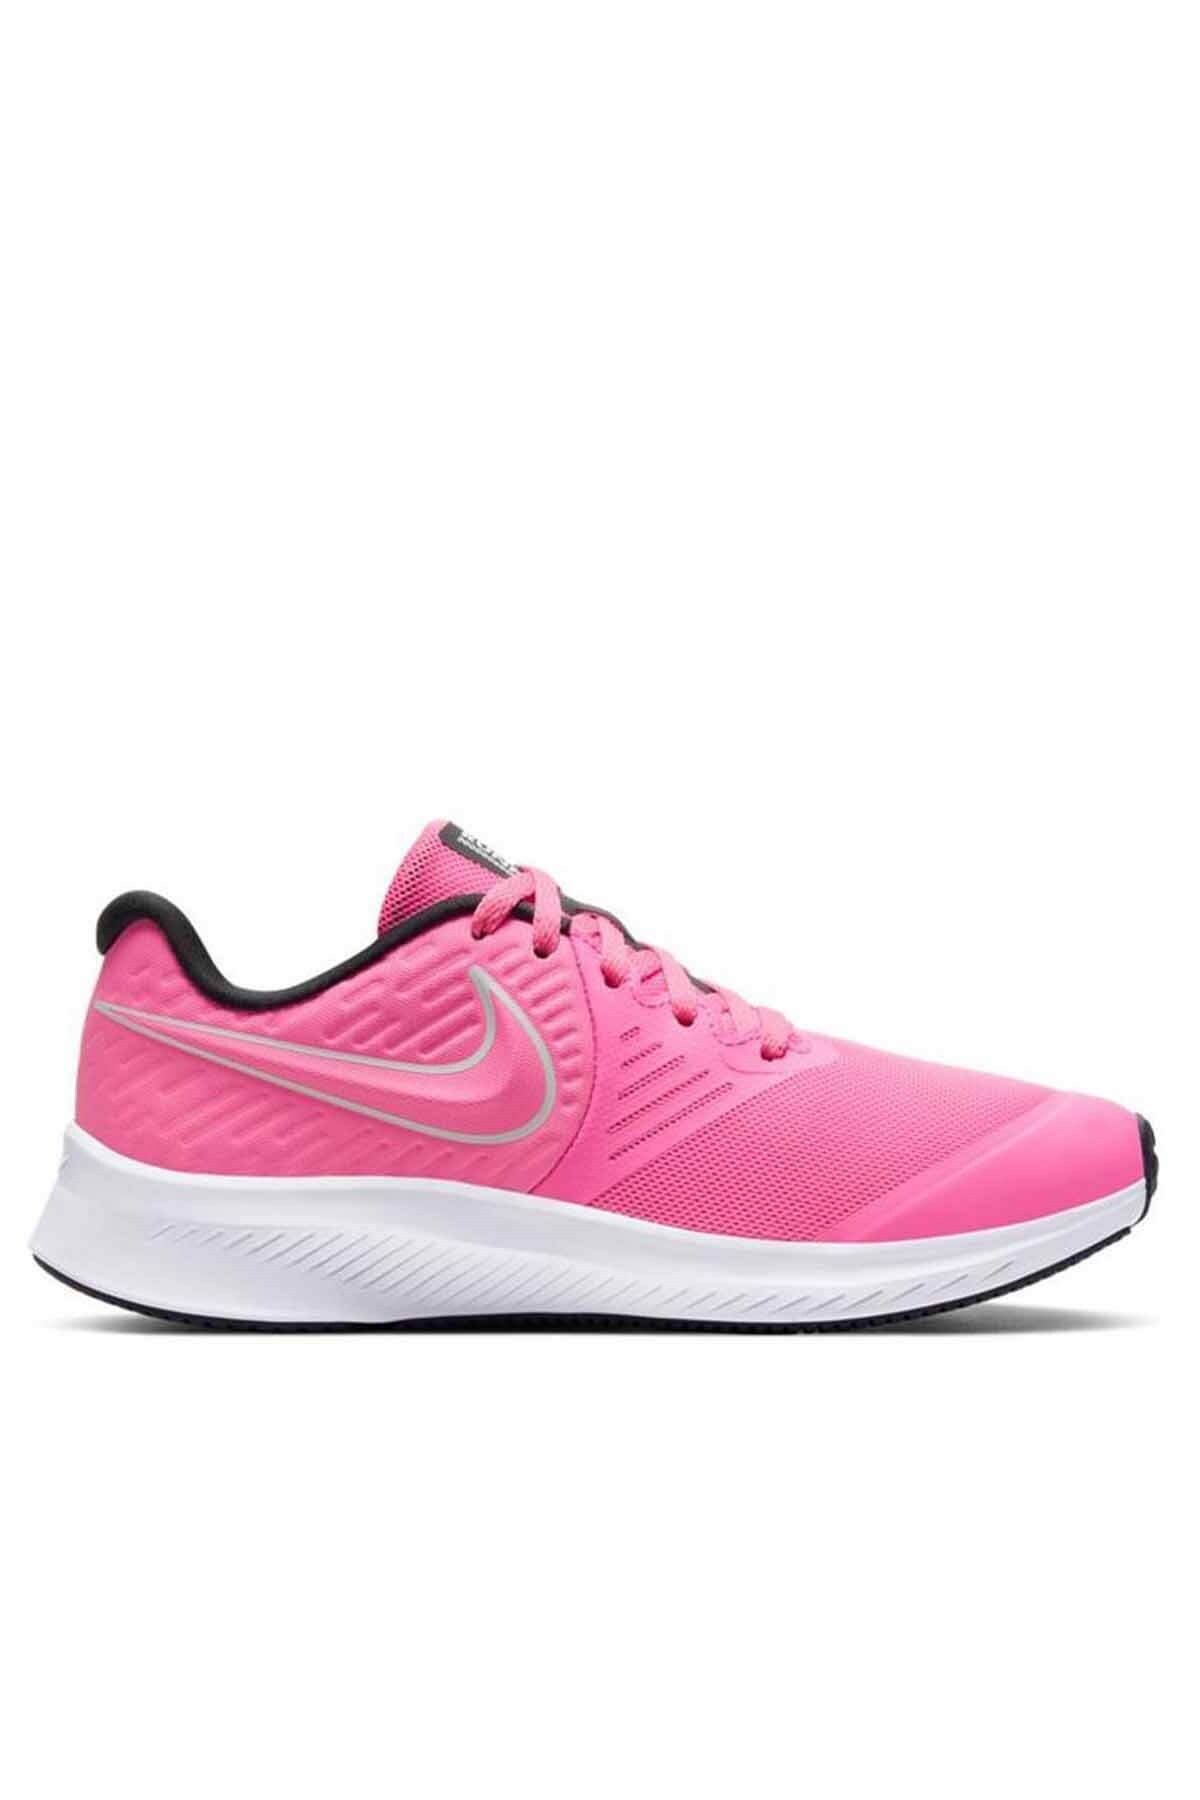 Nike Star Runner 2 (GS) Kadın Yürüyüş Koşu Ayakkabı Aq3542-603-pembe